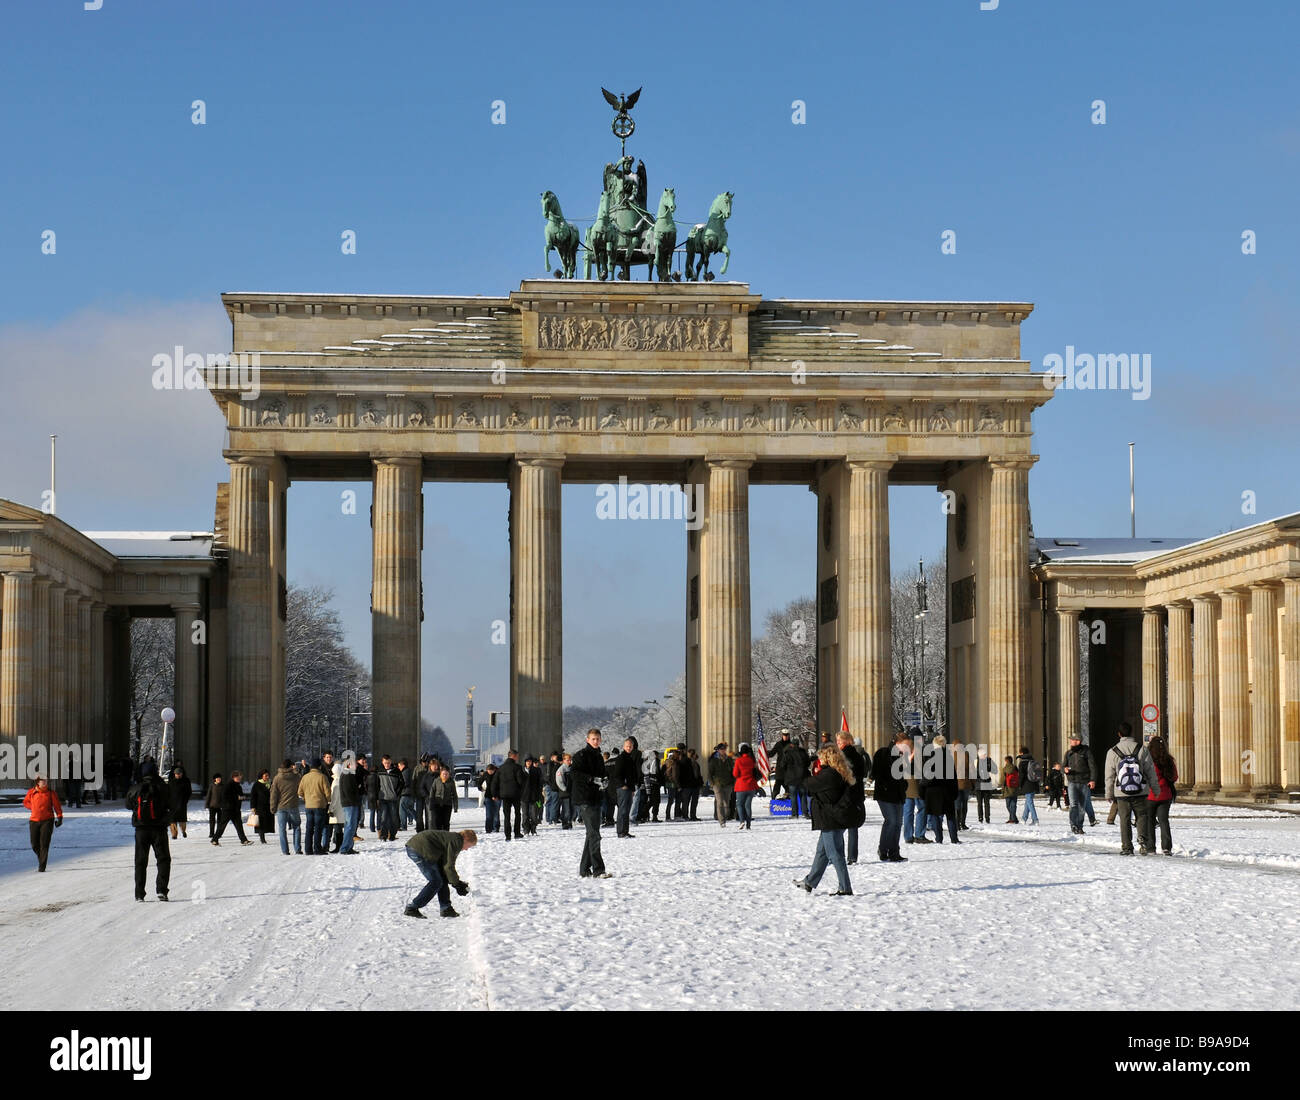 Berlin Paris Square Brandenburg Gate Quadriga In Winter Snow Stock Photo Alamy